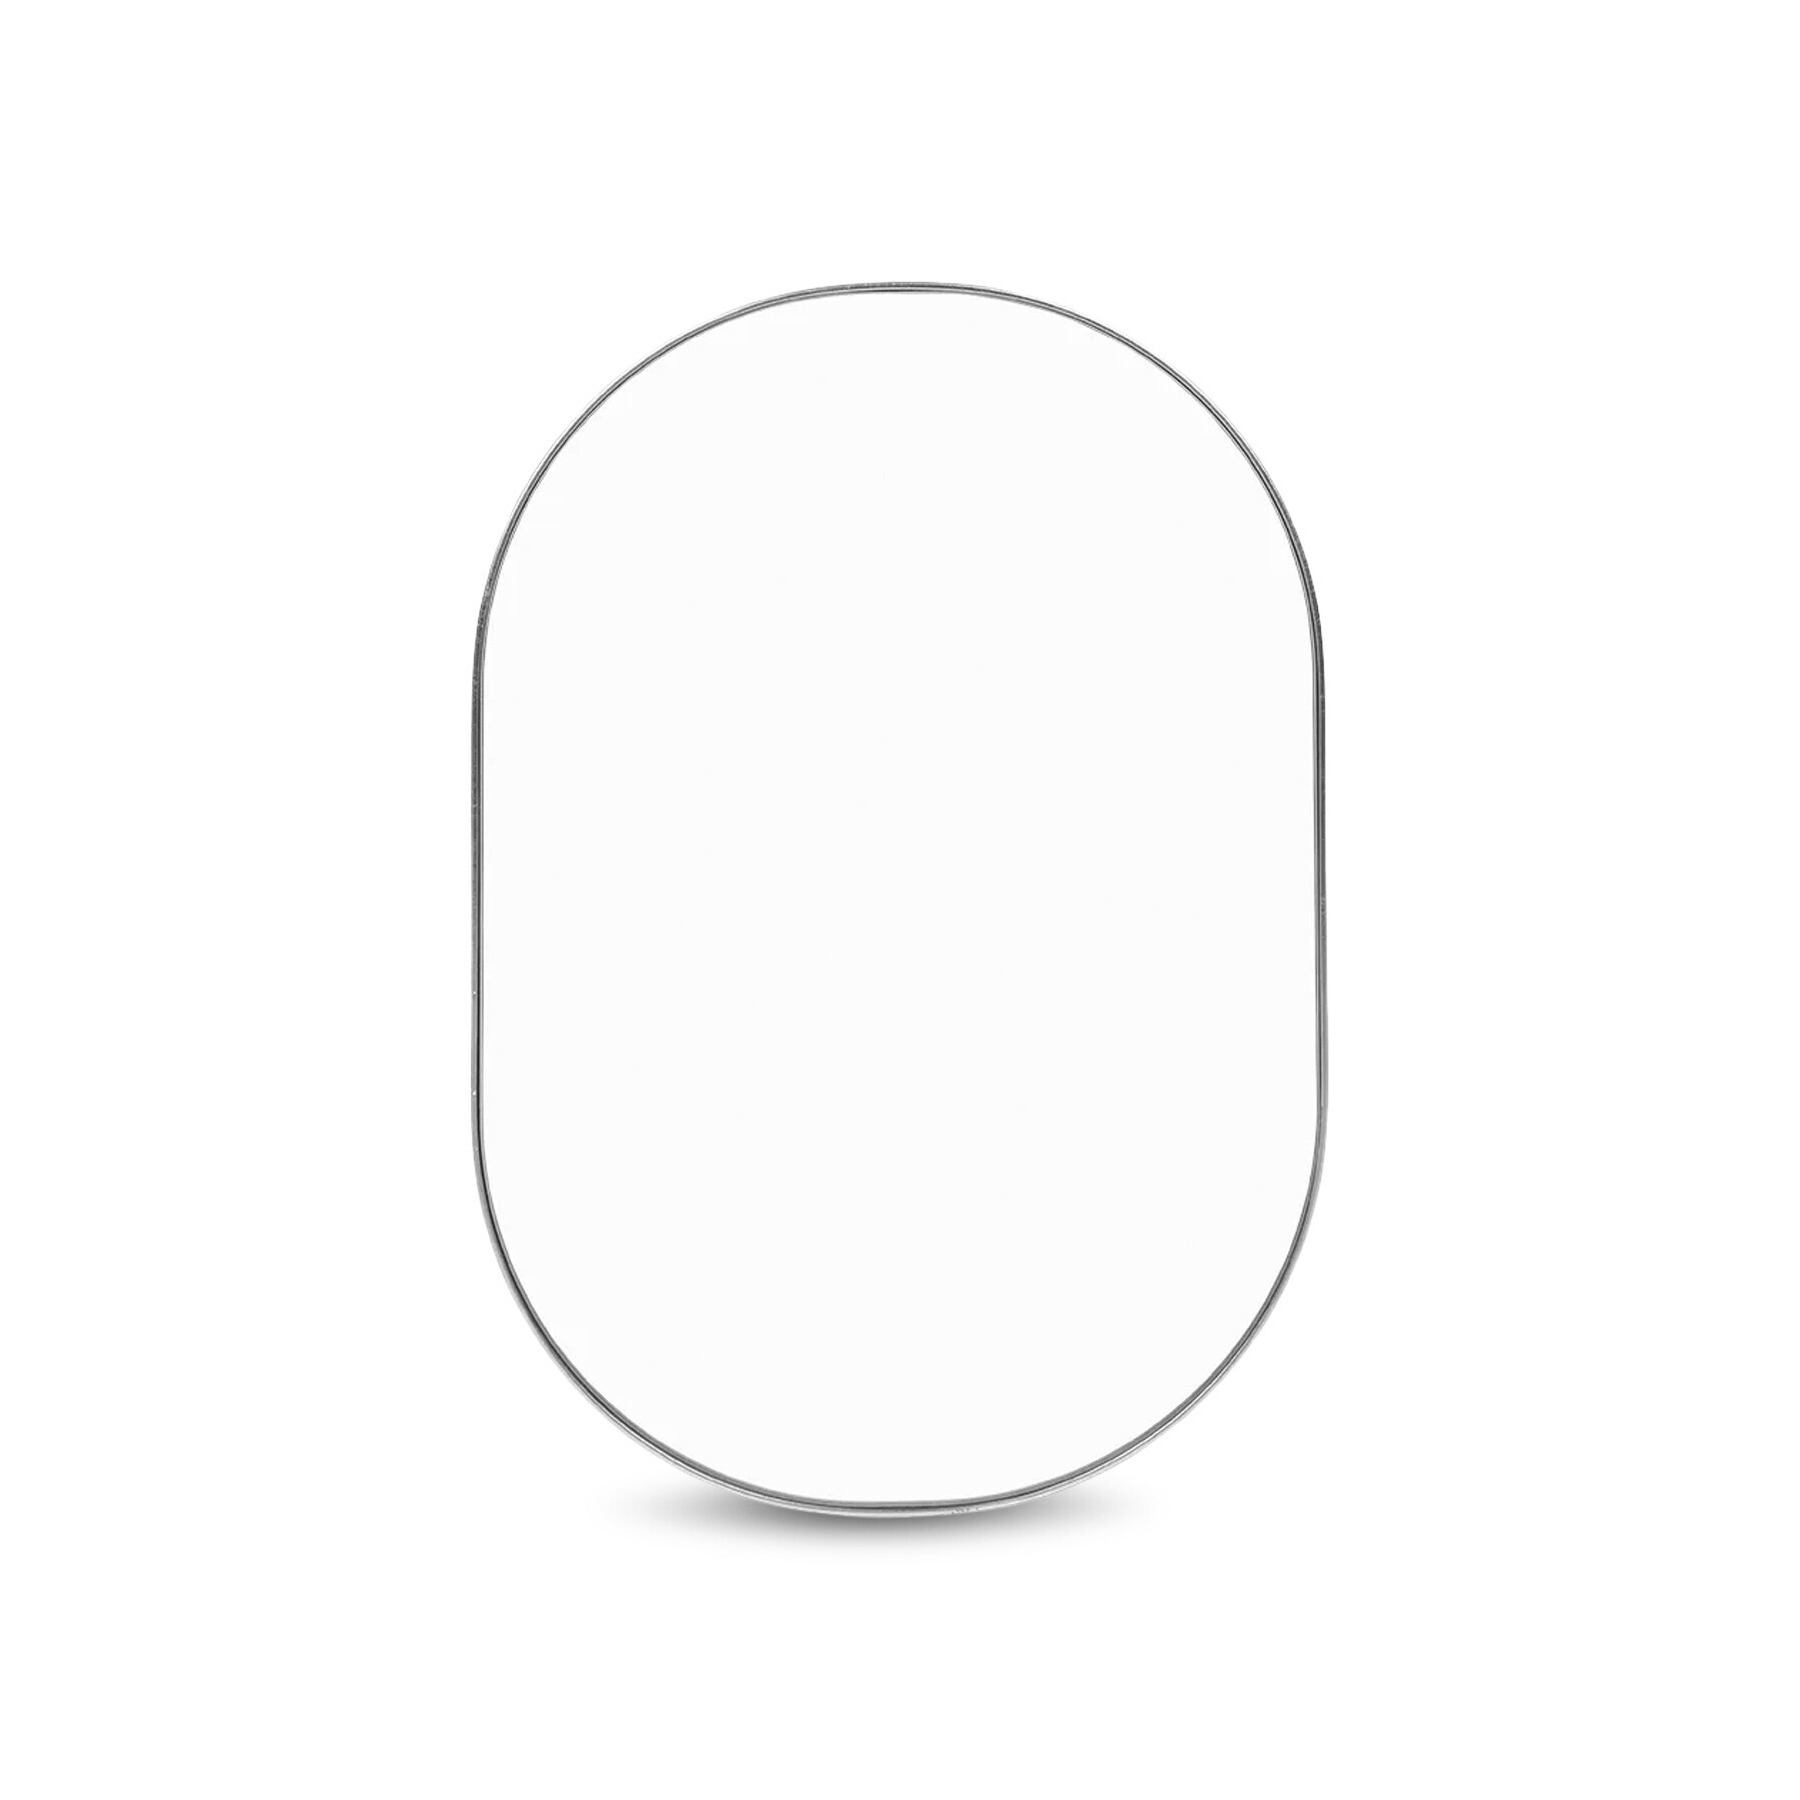 Heal's Fine Edge Mirror Oval - Size Small Silver - image 1